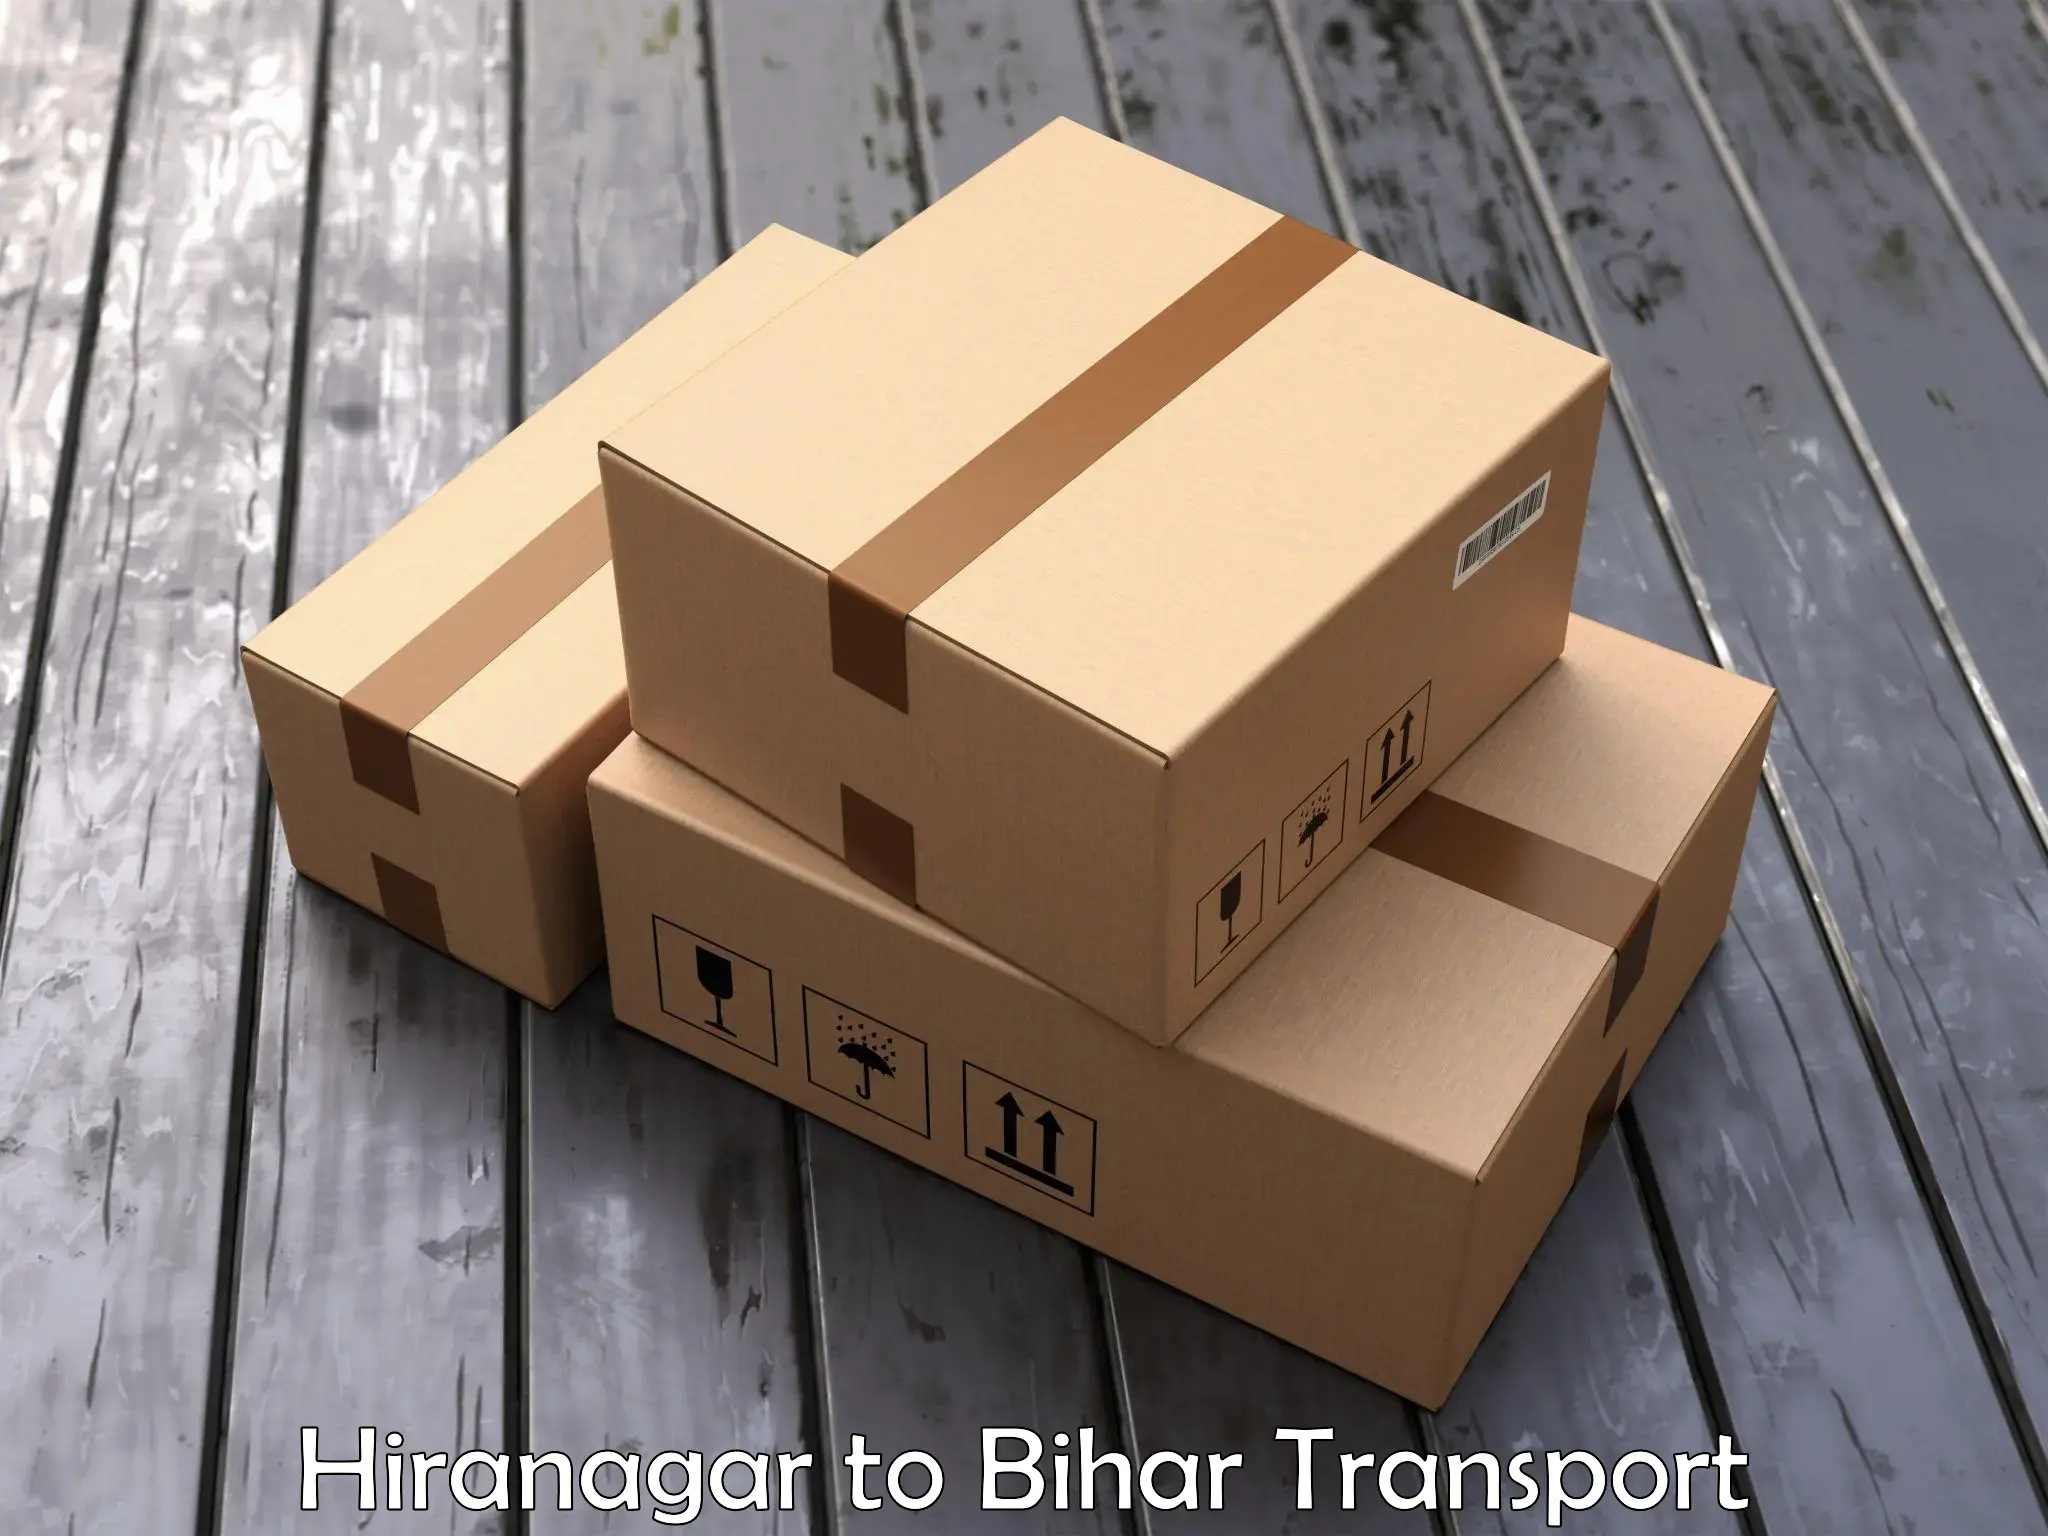 Luggage transport services in Hiranagar to Aurangabad Bihar